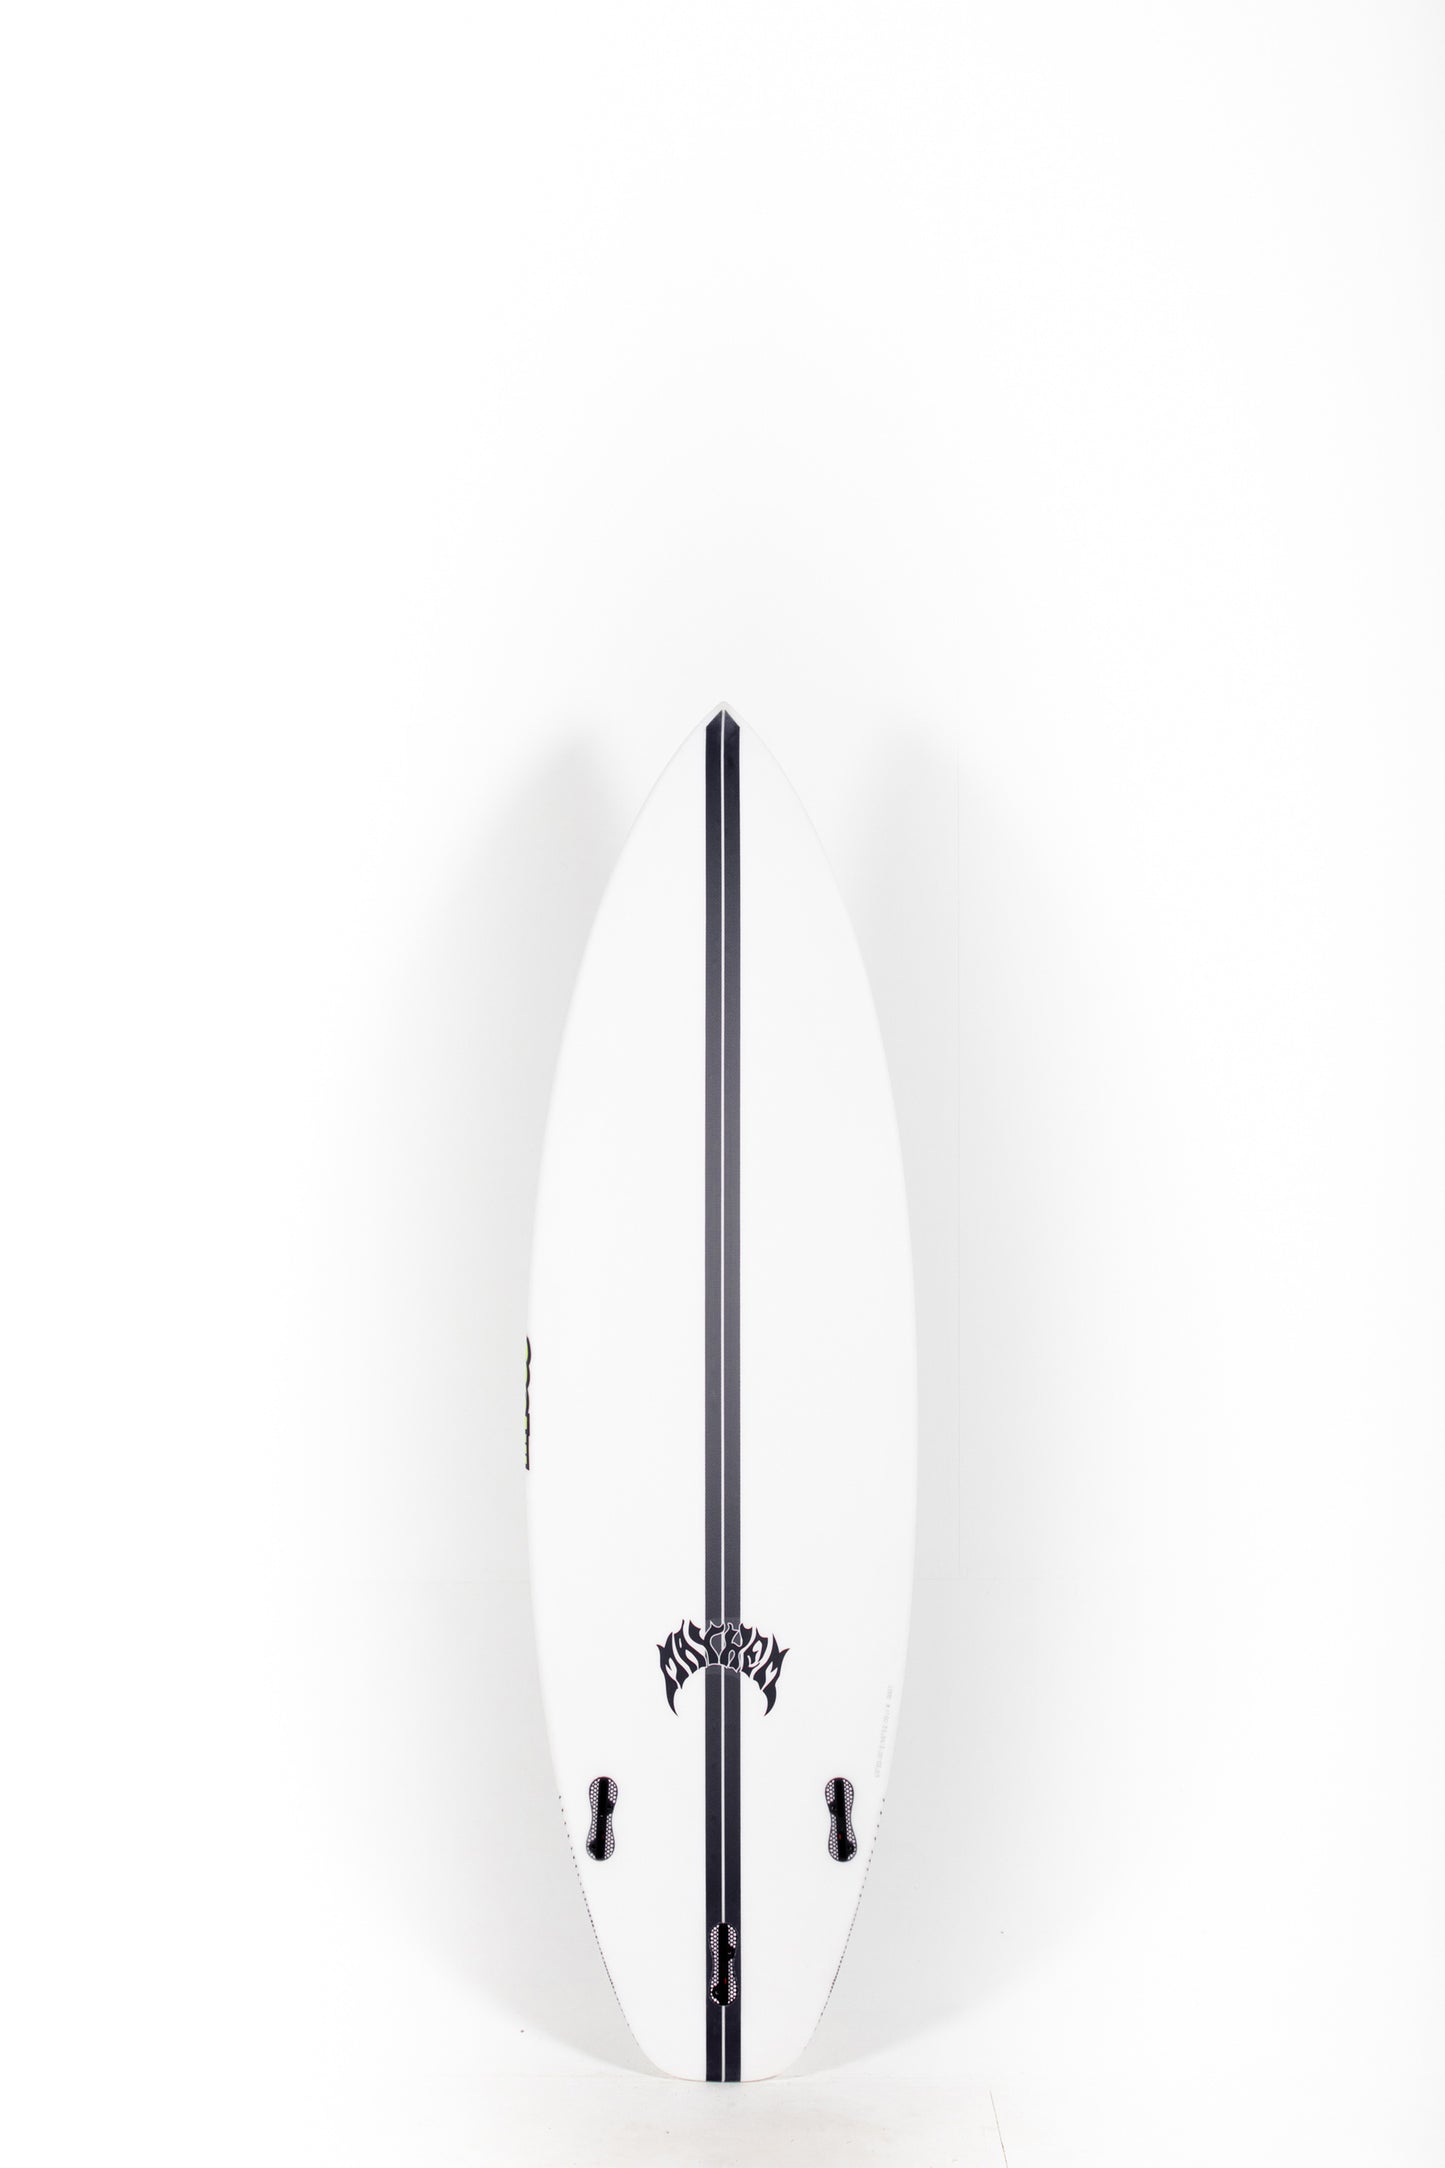 Lost Surfboard - SUB DRIVER 2.0 by Matt Biolos - Light Speed - 6'0 